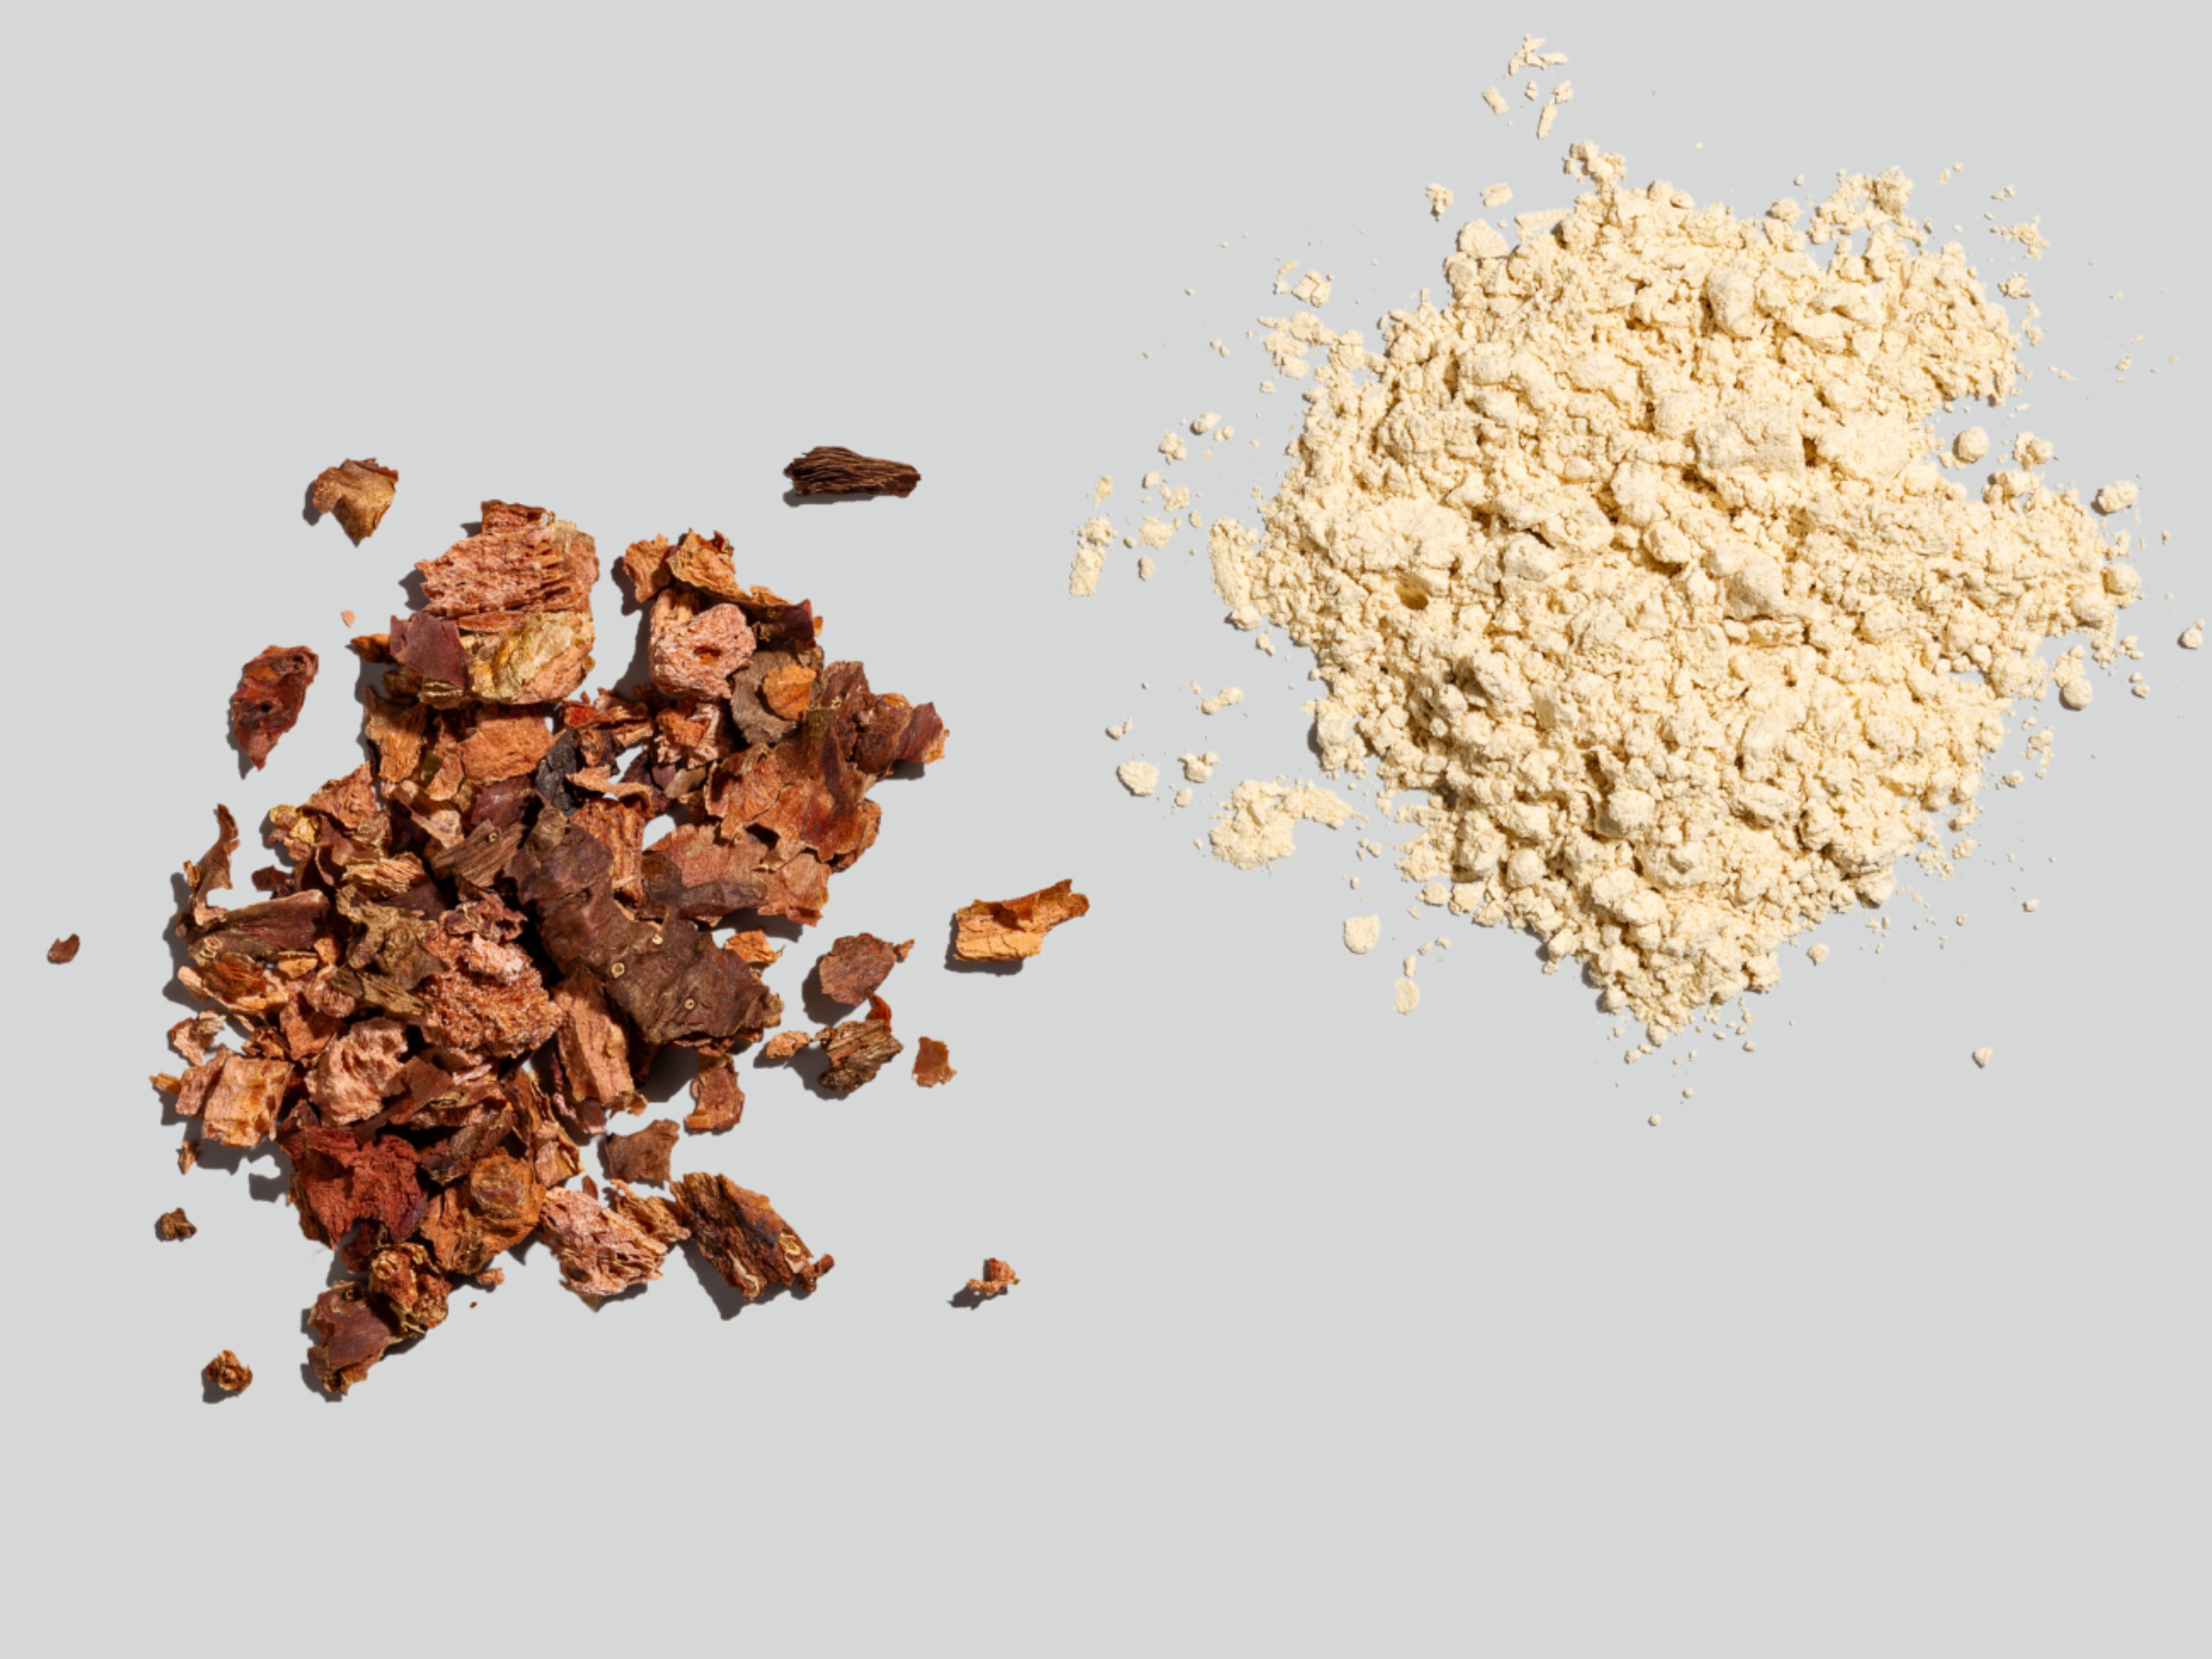 Powdered and dried rhodiola and ashwagandha